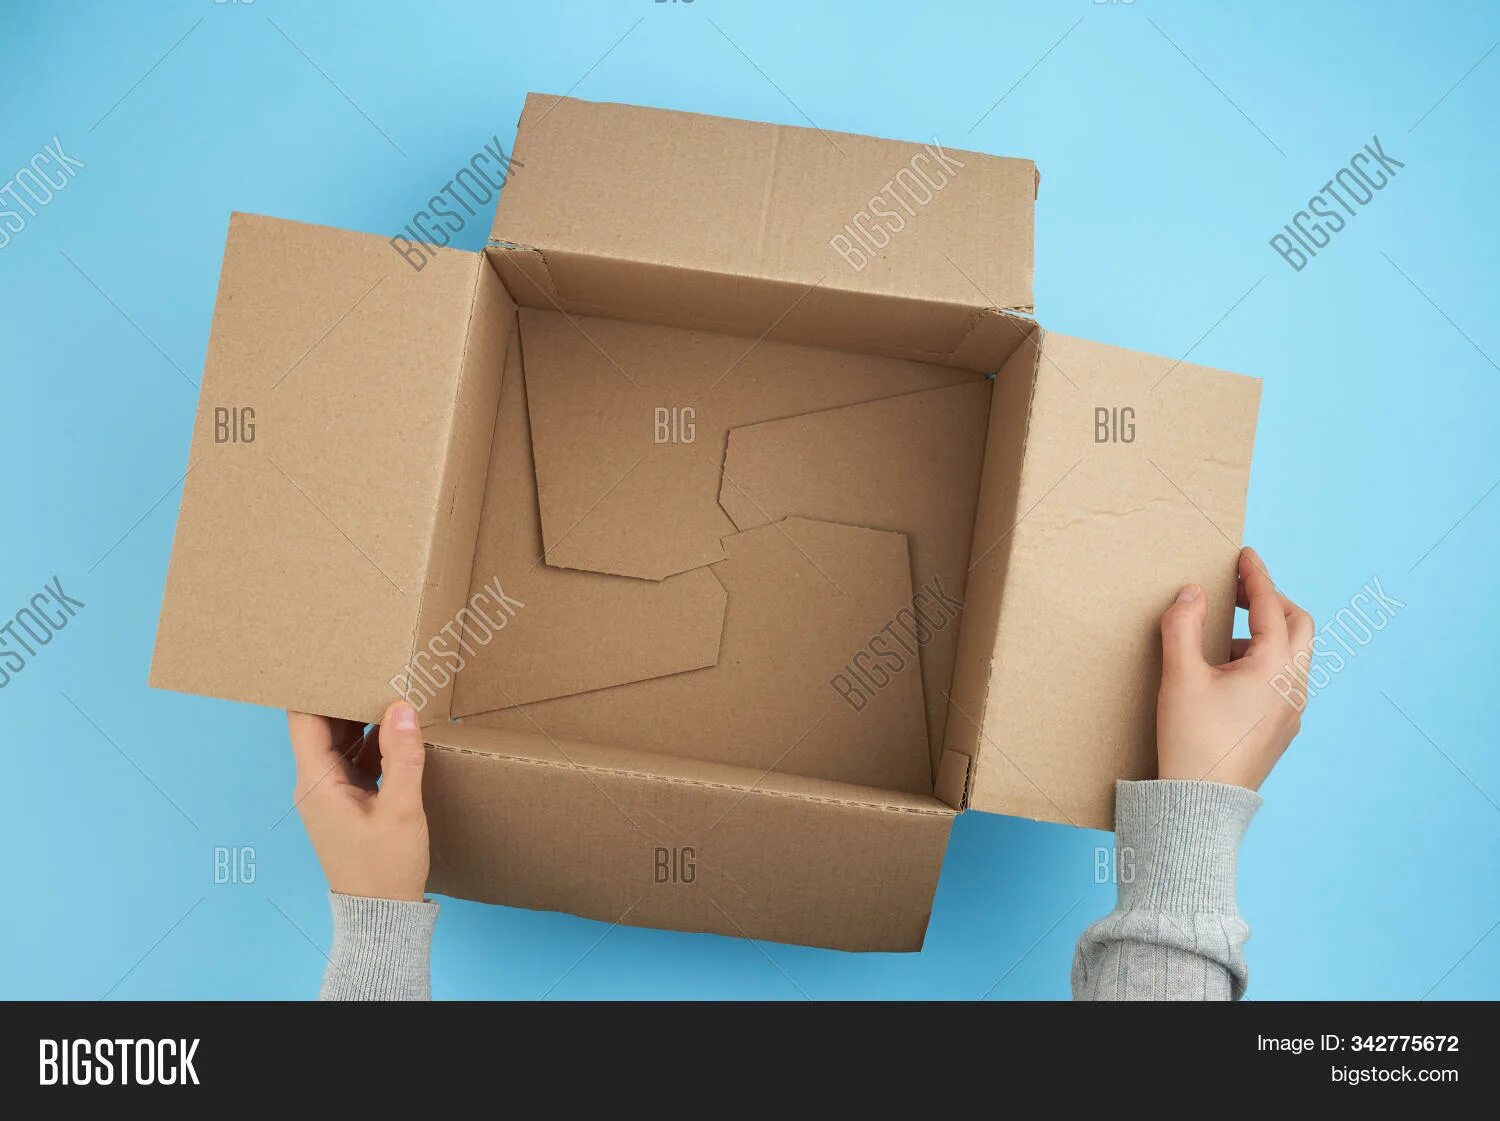 Открывает коробку. Человек открывает коробку. Открытая коробка в руках. Коробка открытая в руках вид сверху. Открой коробку 5